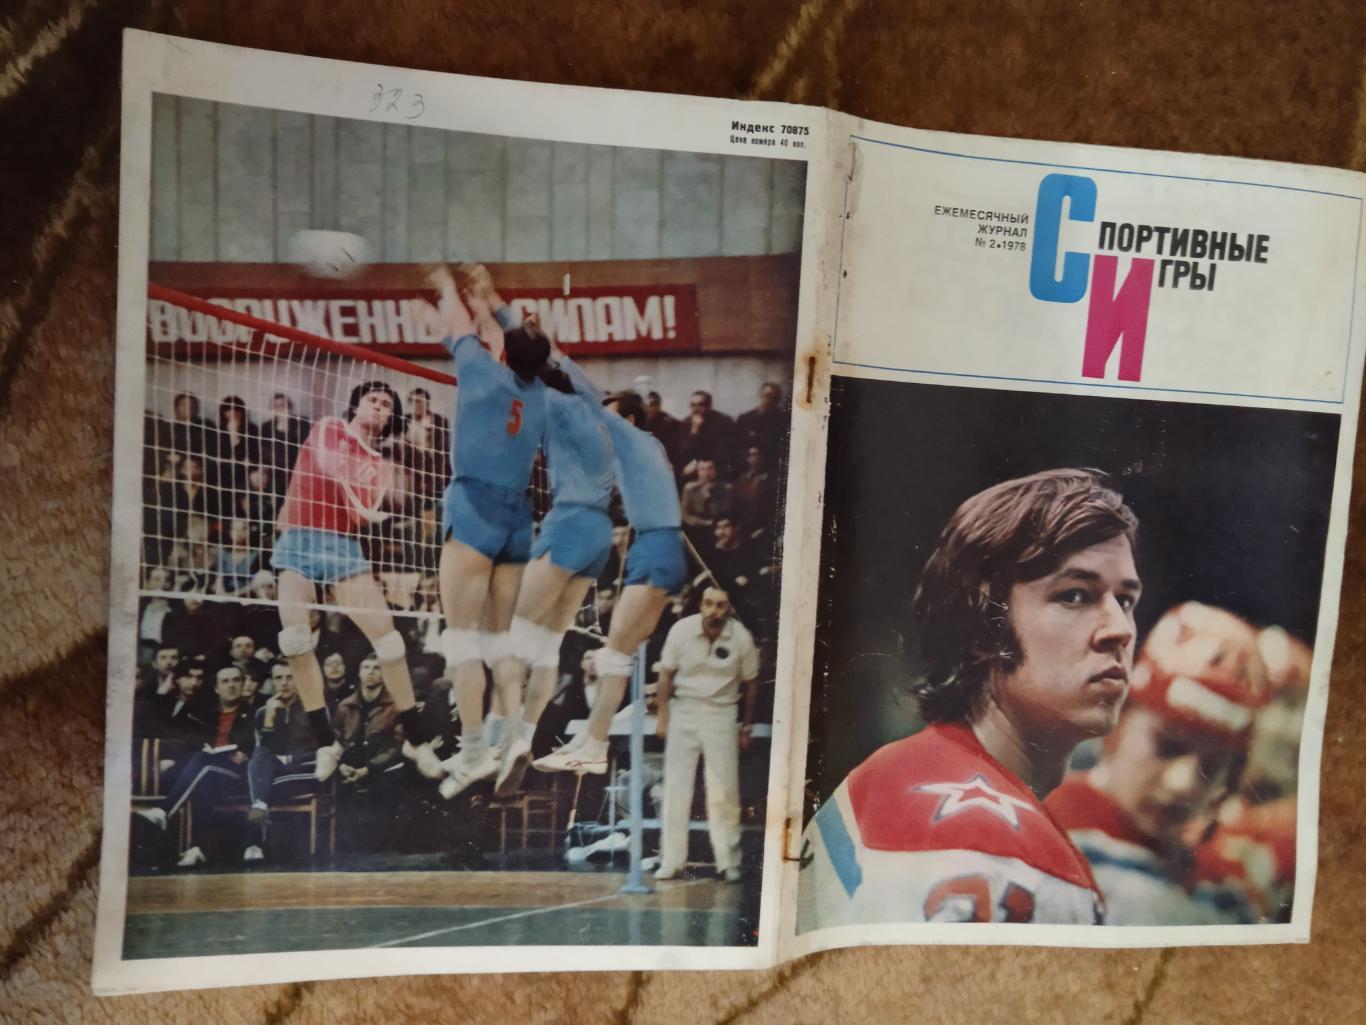 Журнал.Спортивные игры № 2 1978.Футбол,хоккей (СССР-Канада-НХЛ),волейбол,регби.